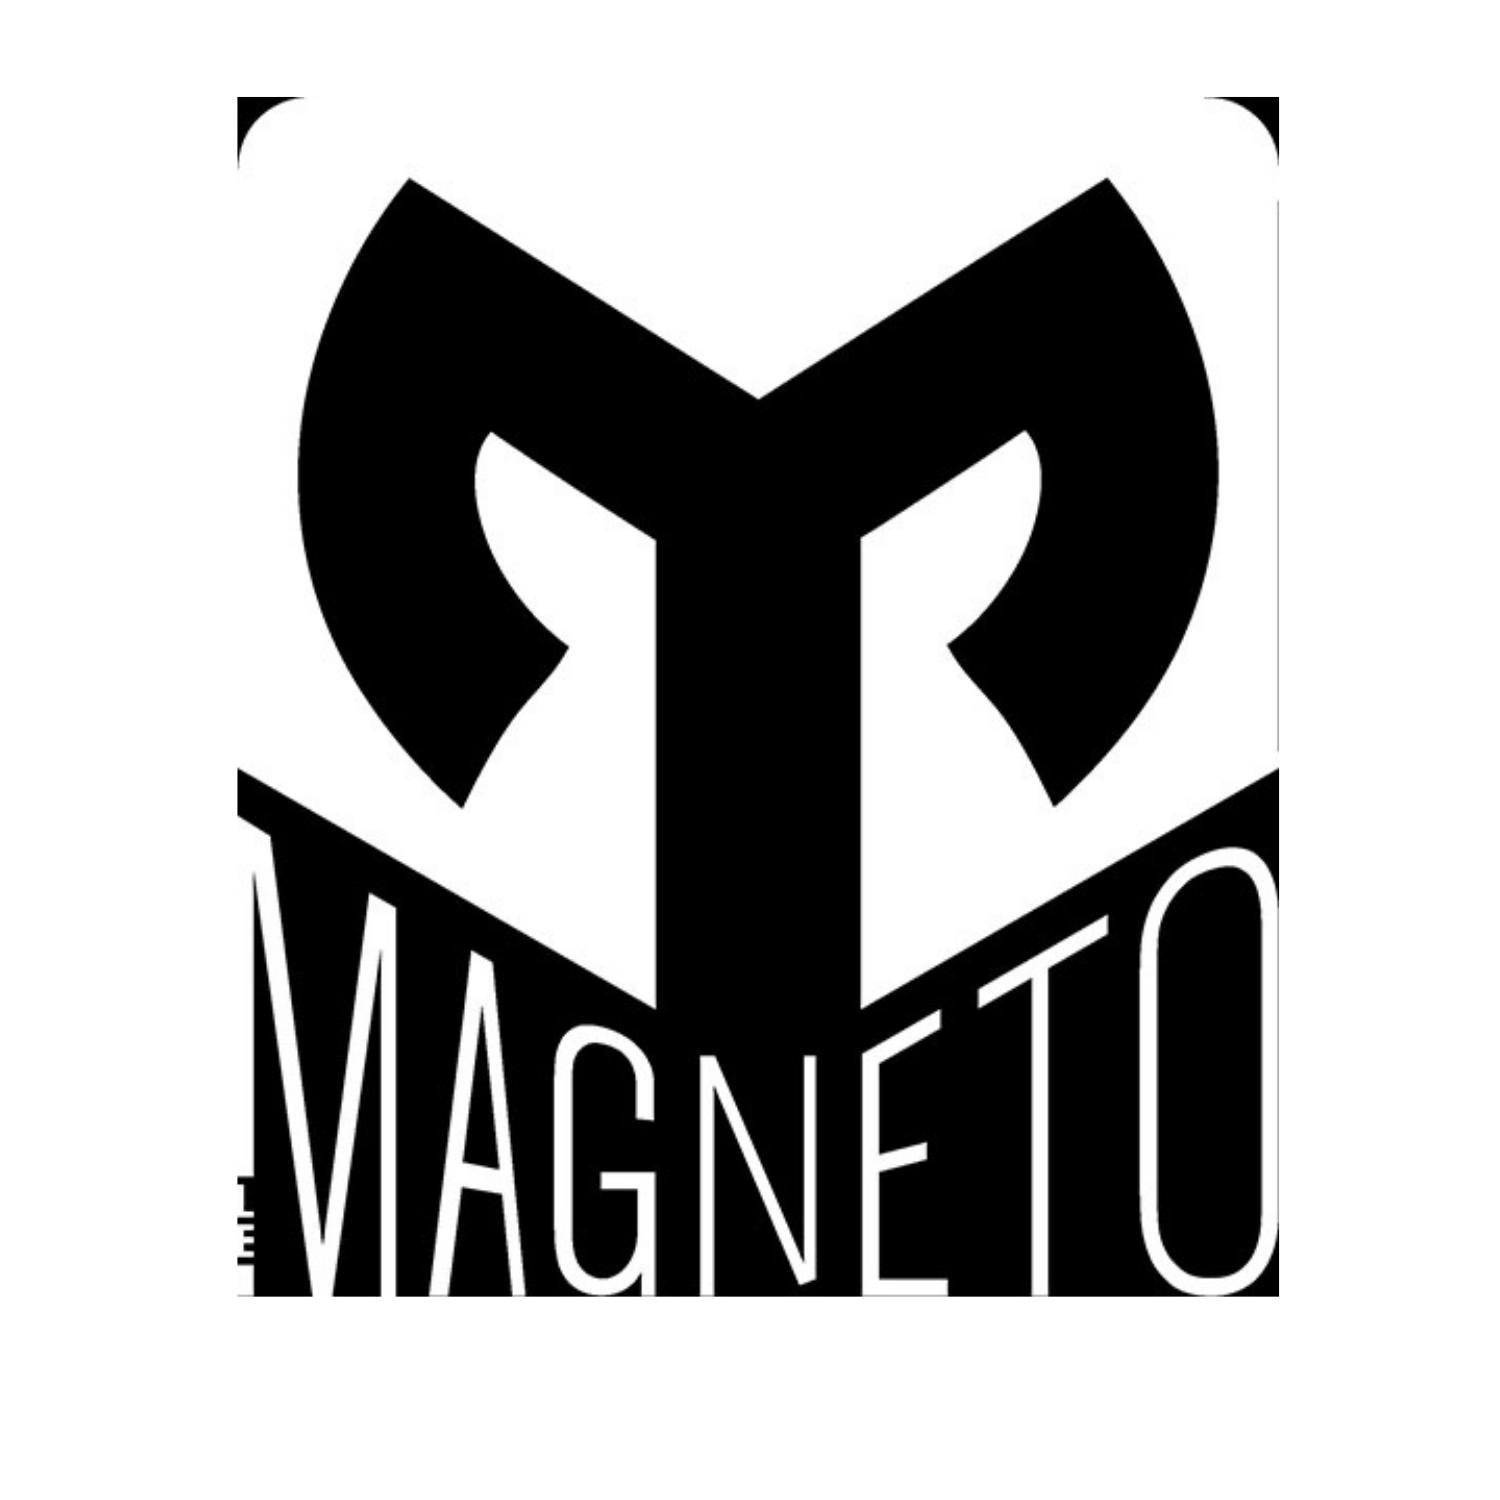 Le Magneto